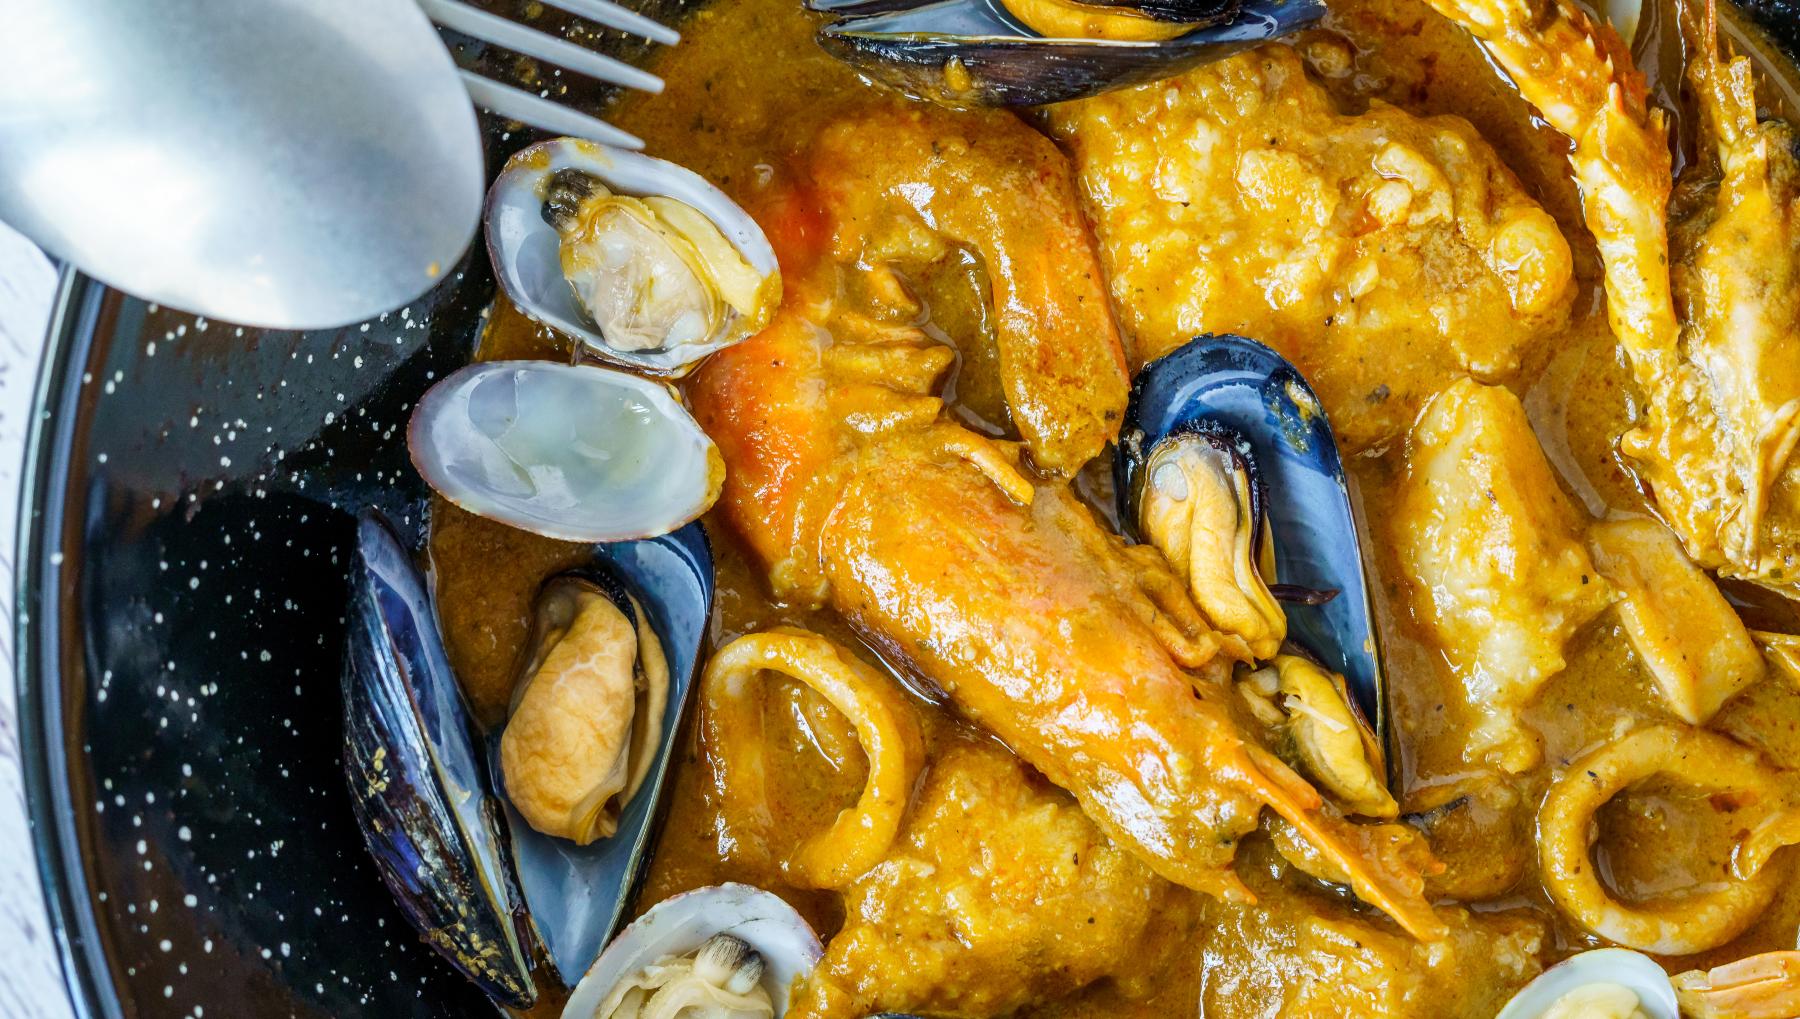 https://okdiario.com/img/2022/12/21/receta-rapida-de-sopa-de-pescado-y-marisco-para-navidad.jpg